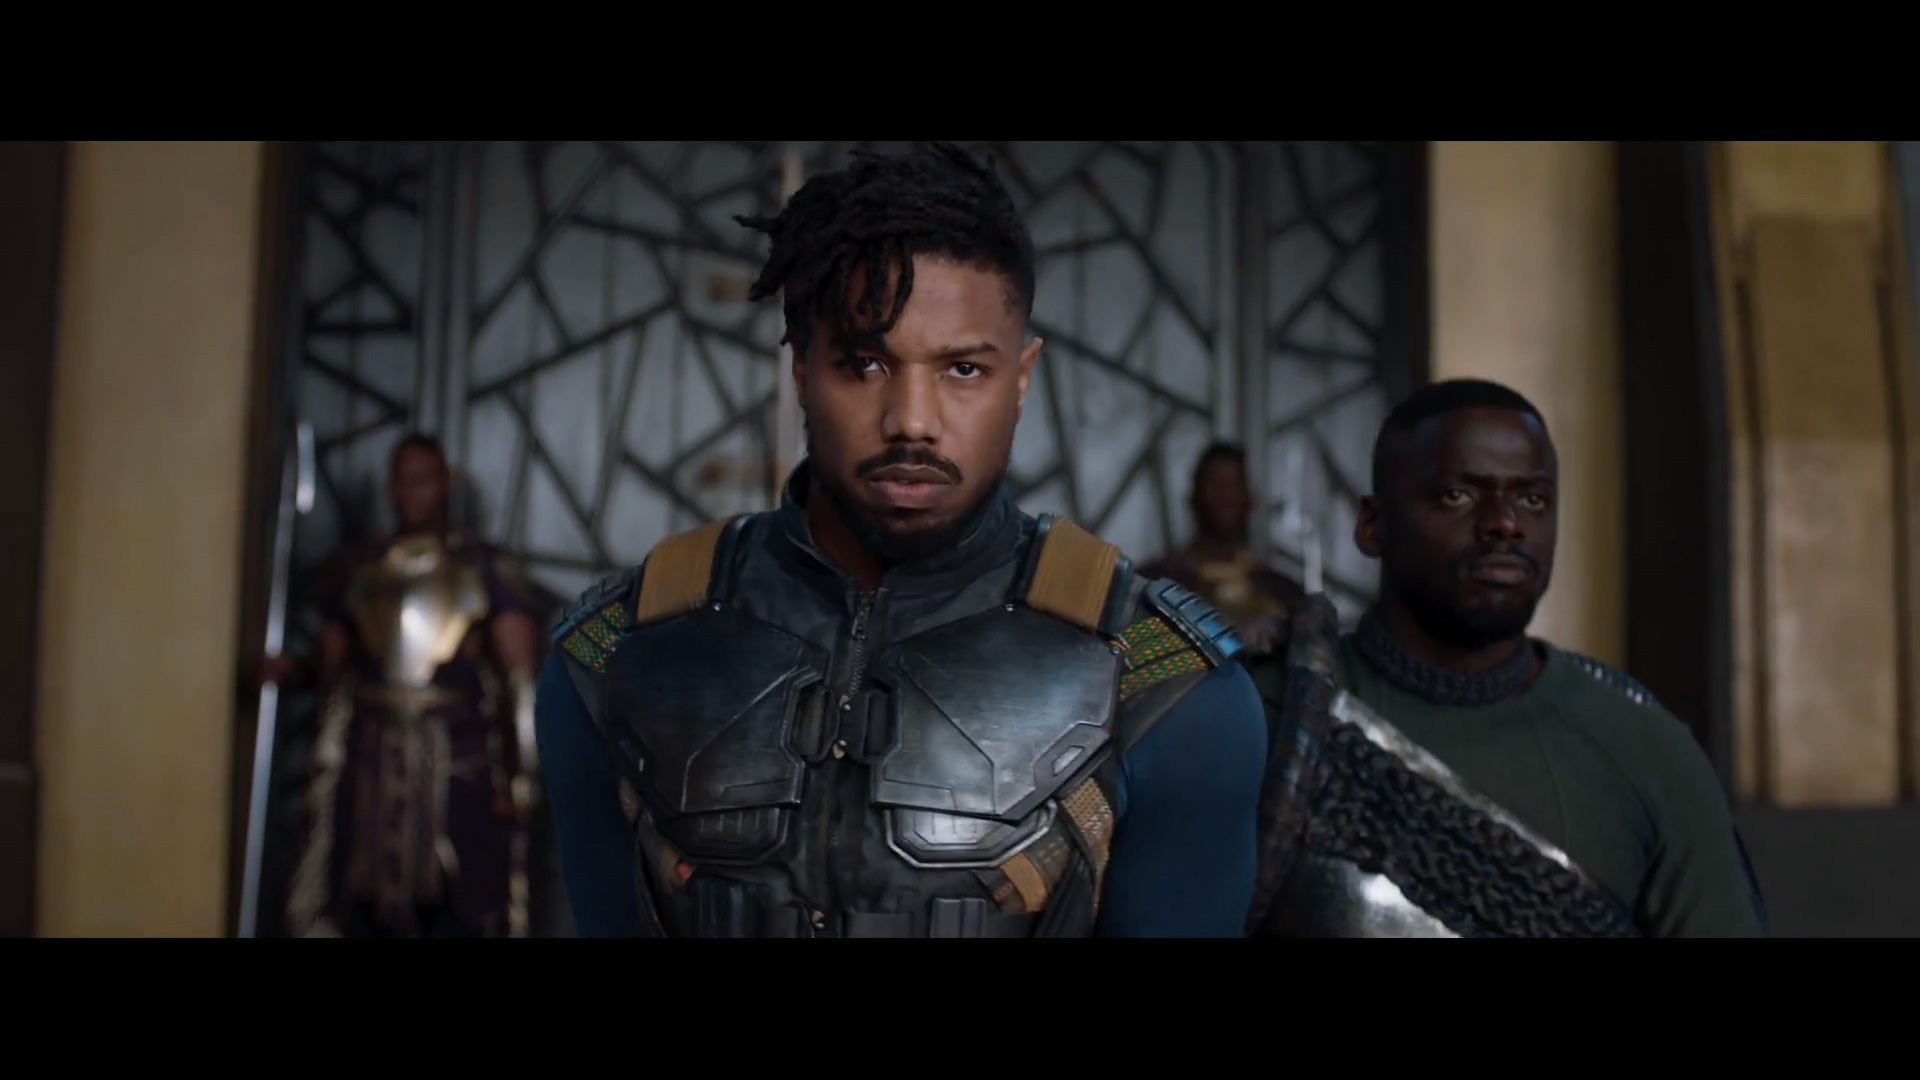 Black Panther Teaser Trailer Released | Concept Art World